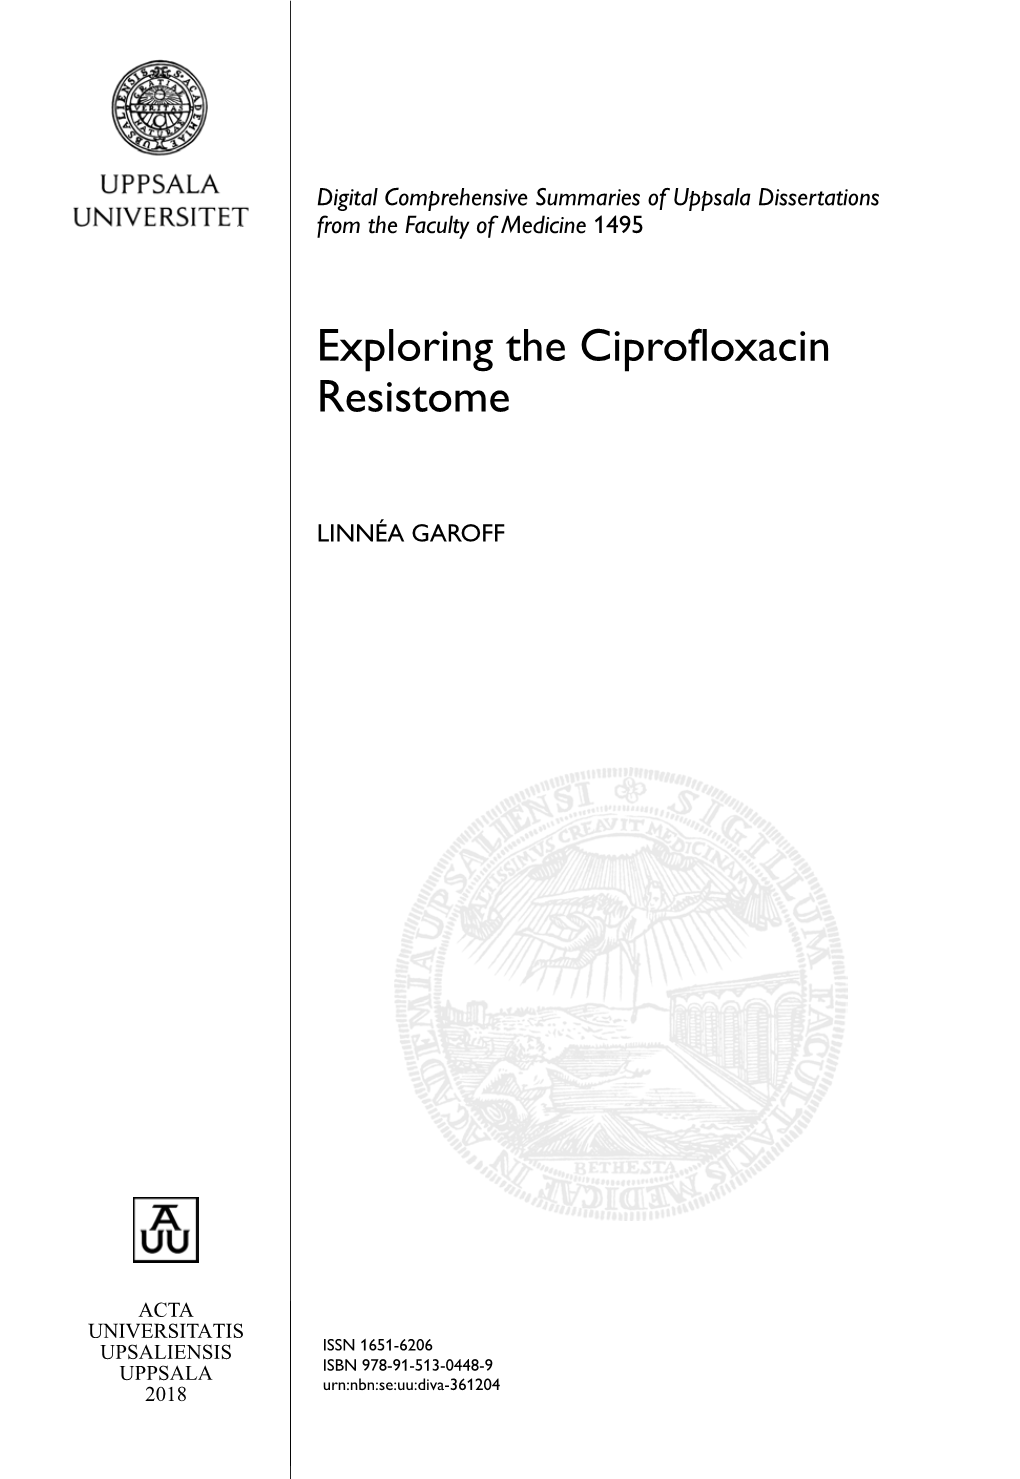 Exploring the Ciprofloxacin Resistome